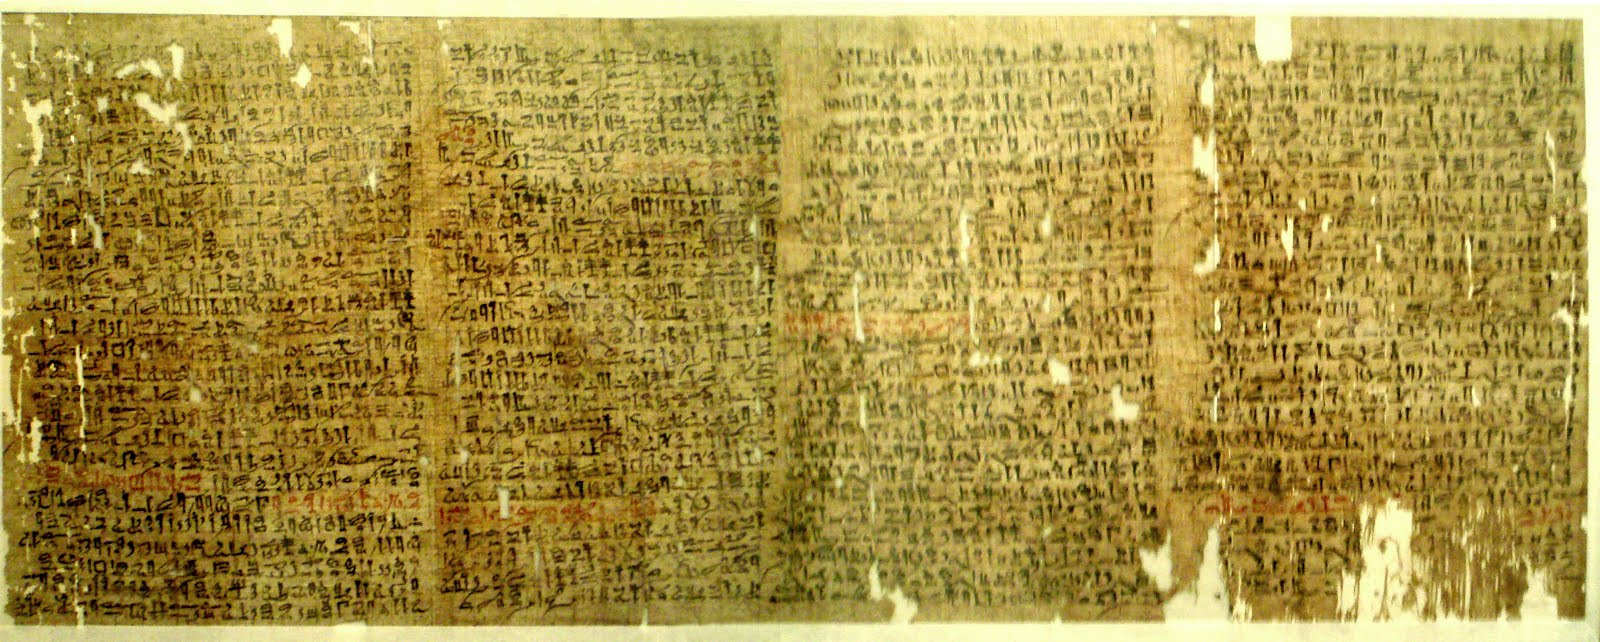 Papiro romano para comunicaciones en red